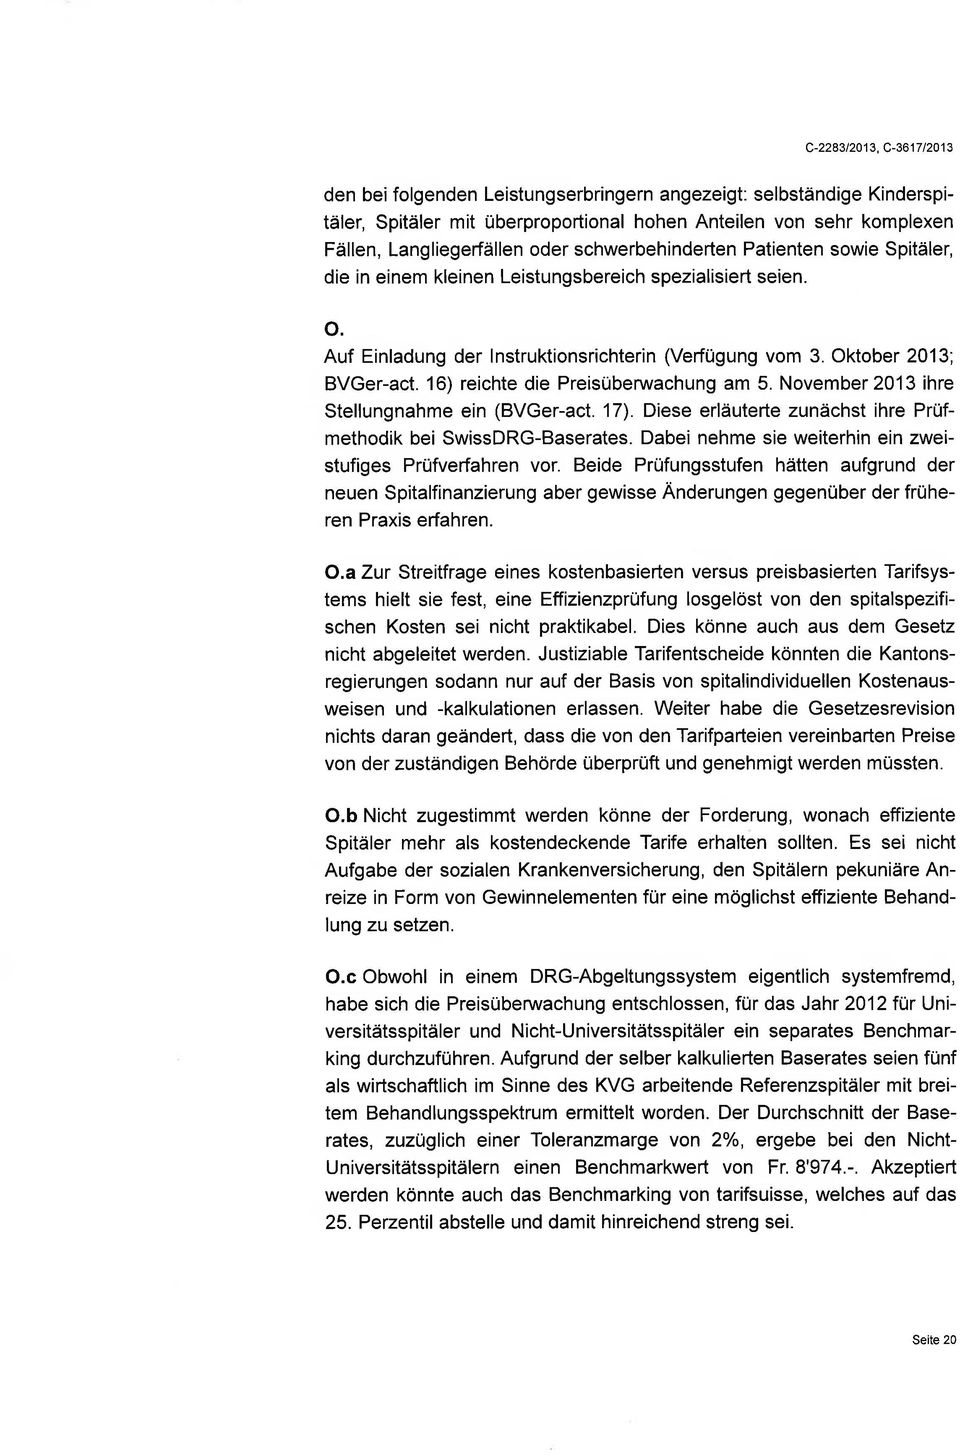 Oktober 2013', BVGer-act. 16) reichte die Preisübenruachung am 5. November2Ol3 ihre Stellungnahme ein (BVGer-act. 17). Diese erläuterte zunächst ihre Prüfmethodik bei SwissDRG-Baserates.